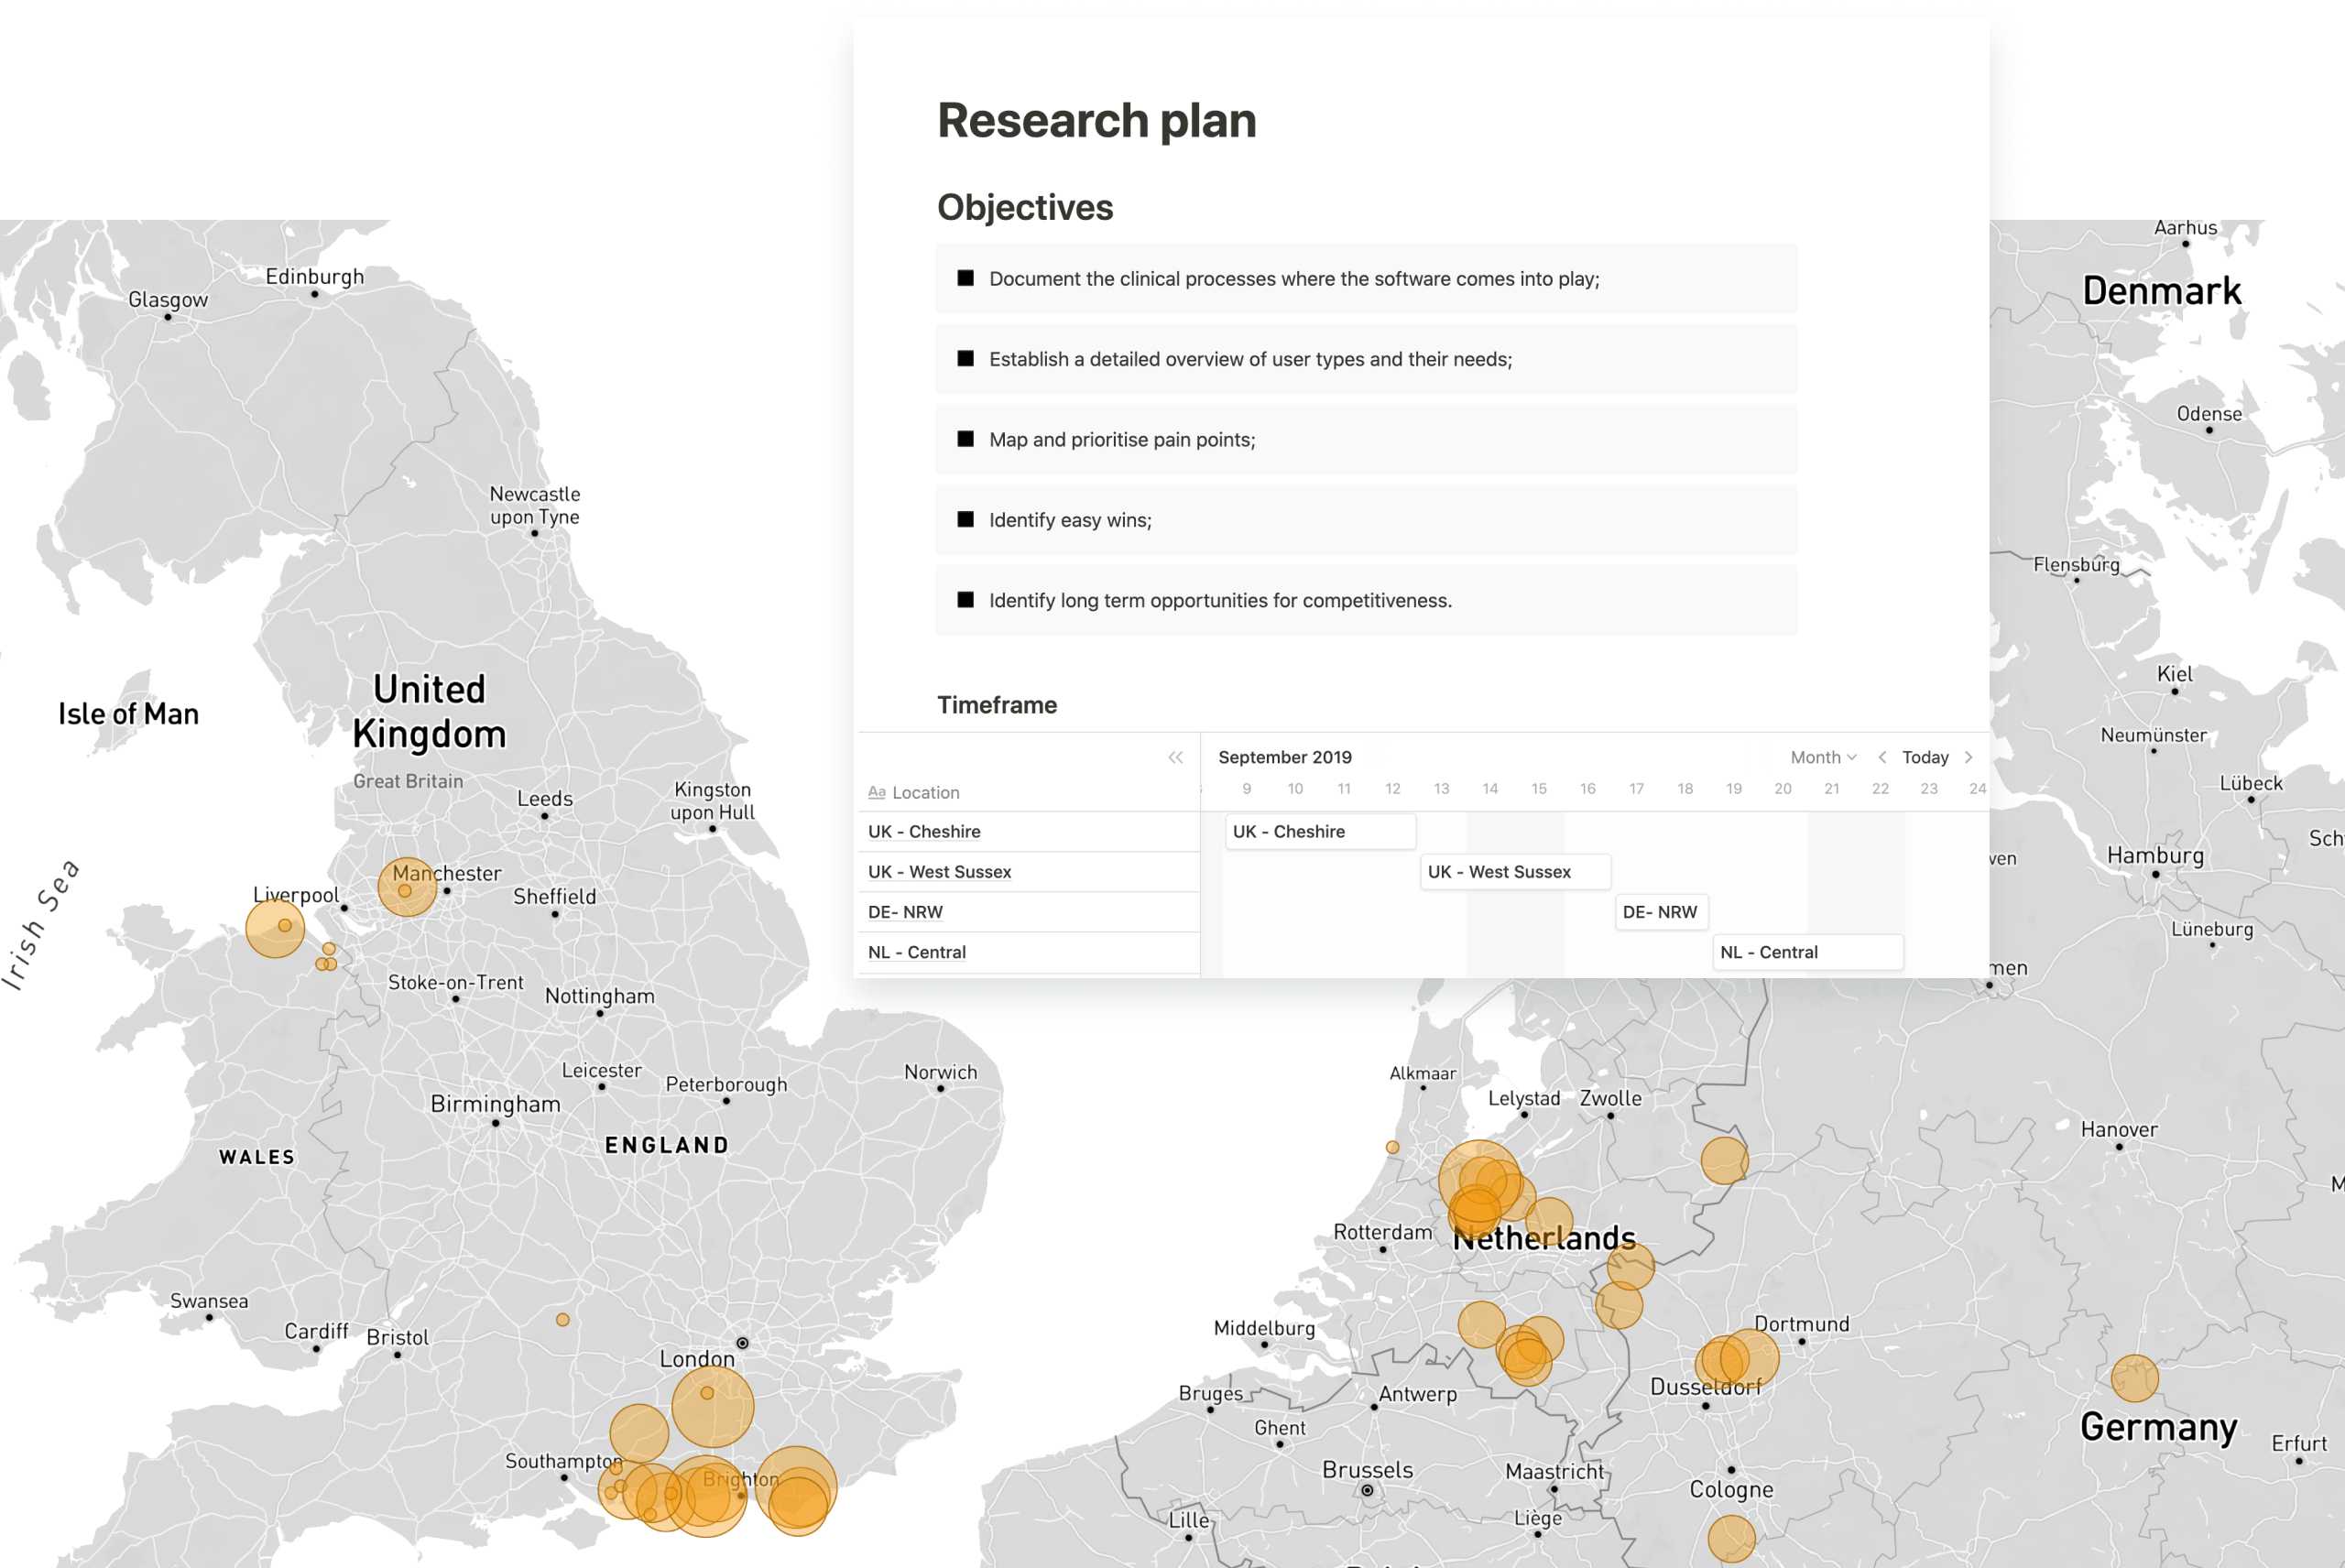 Mapa de España, el Reino Unido y Alemania con las ubicaciones de las investigaciones de usuarios resaltadas